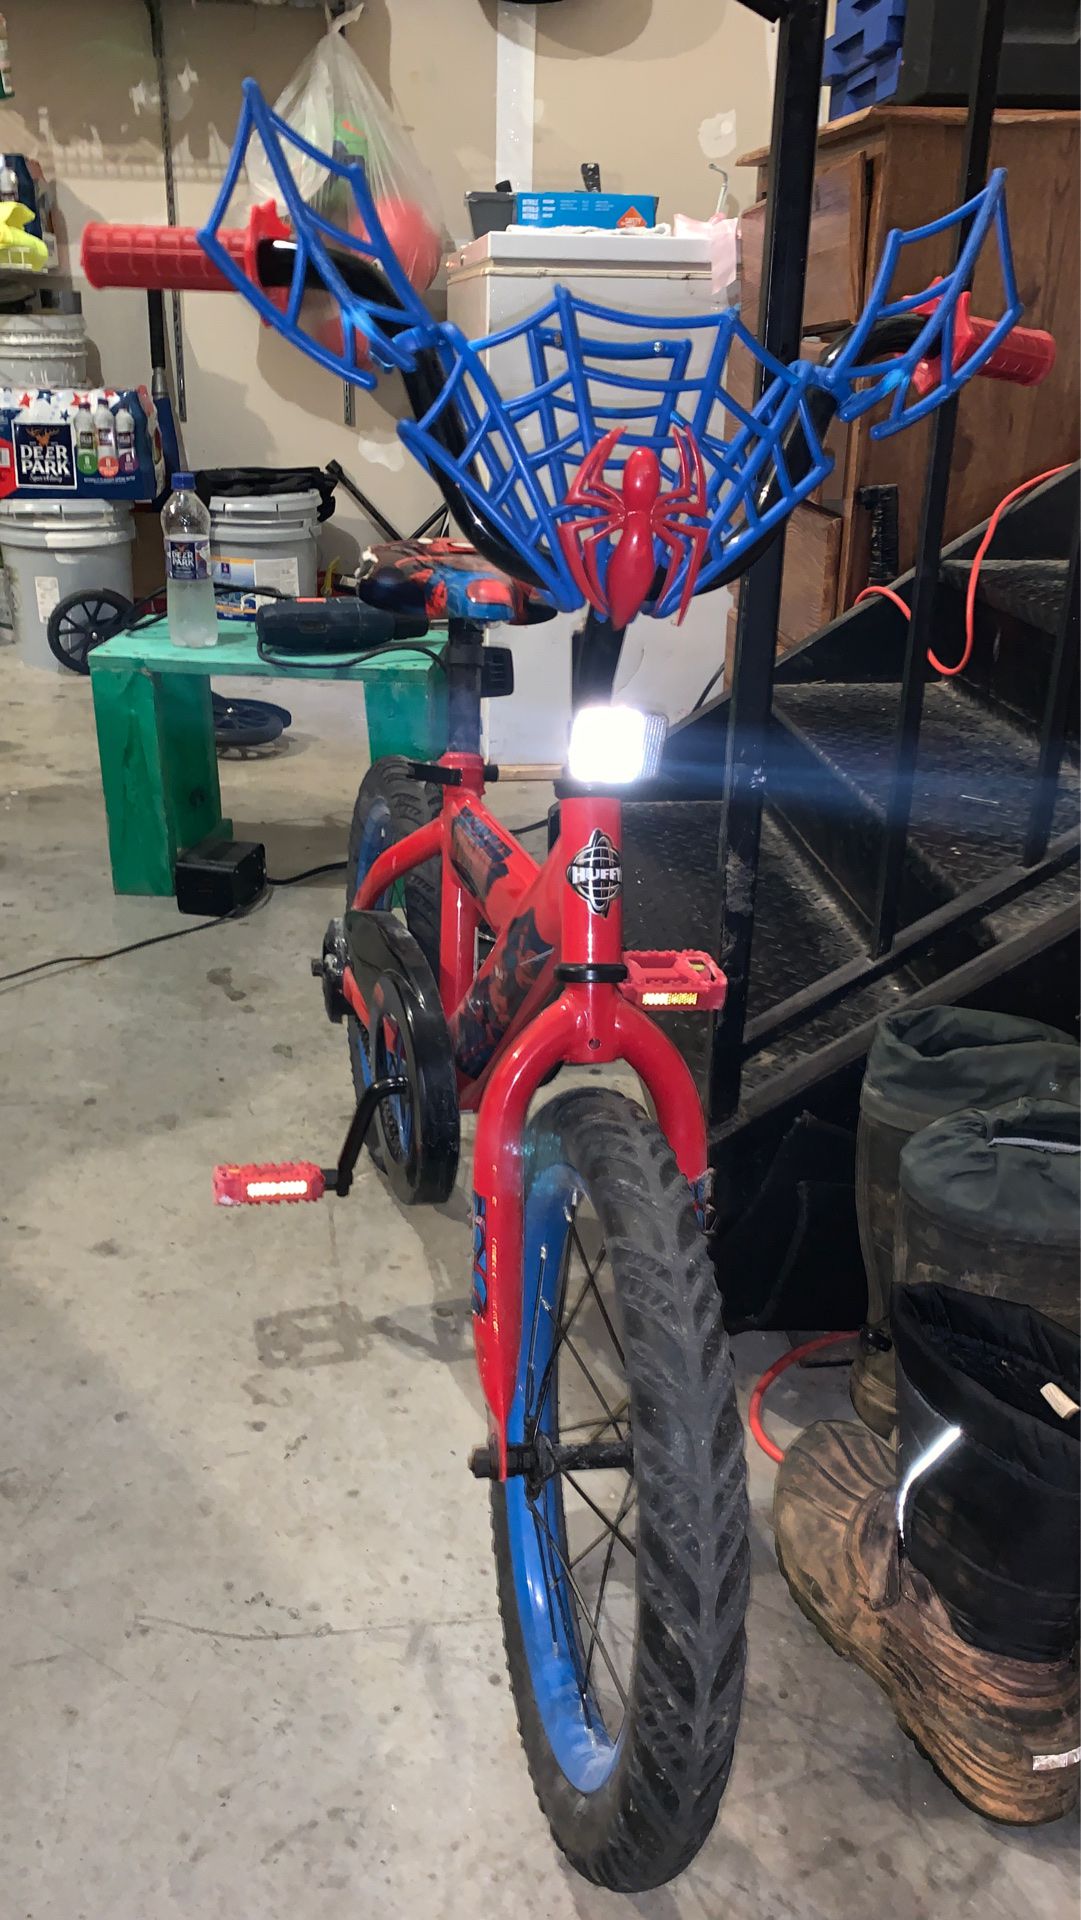 Spiderman huffy bike